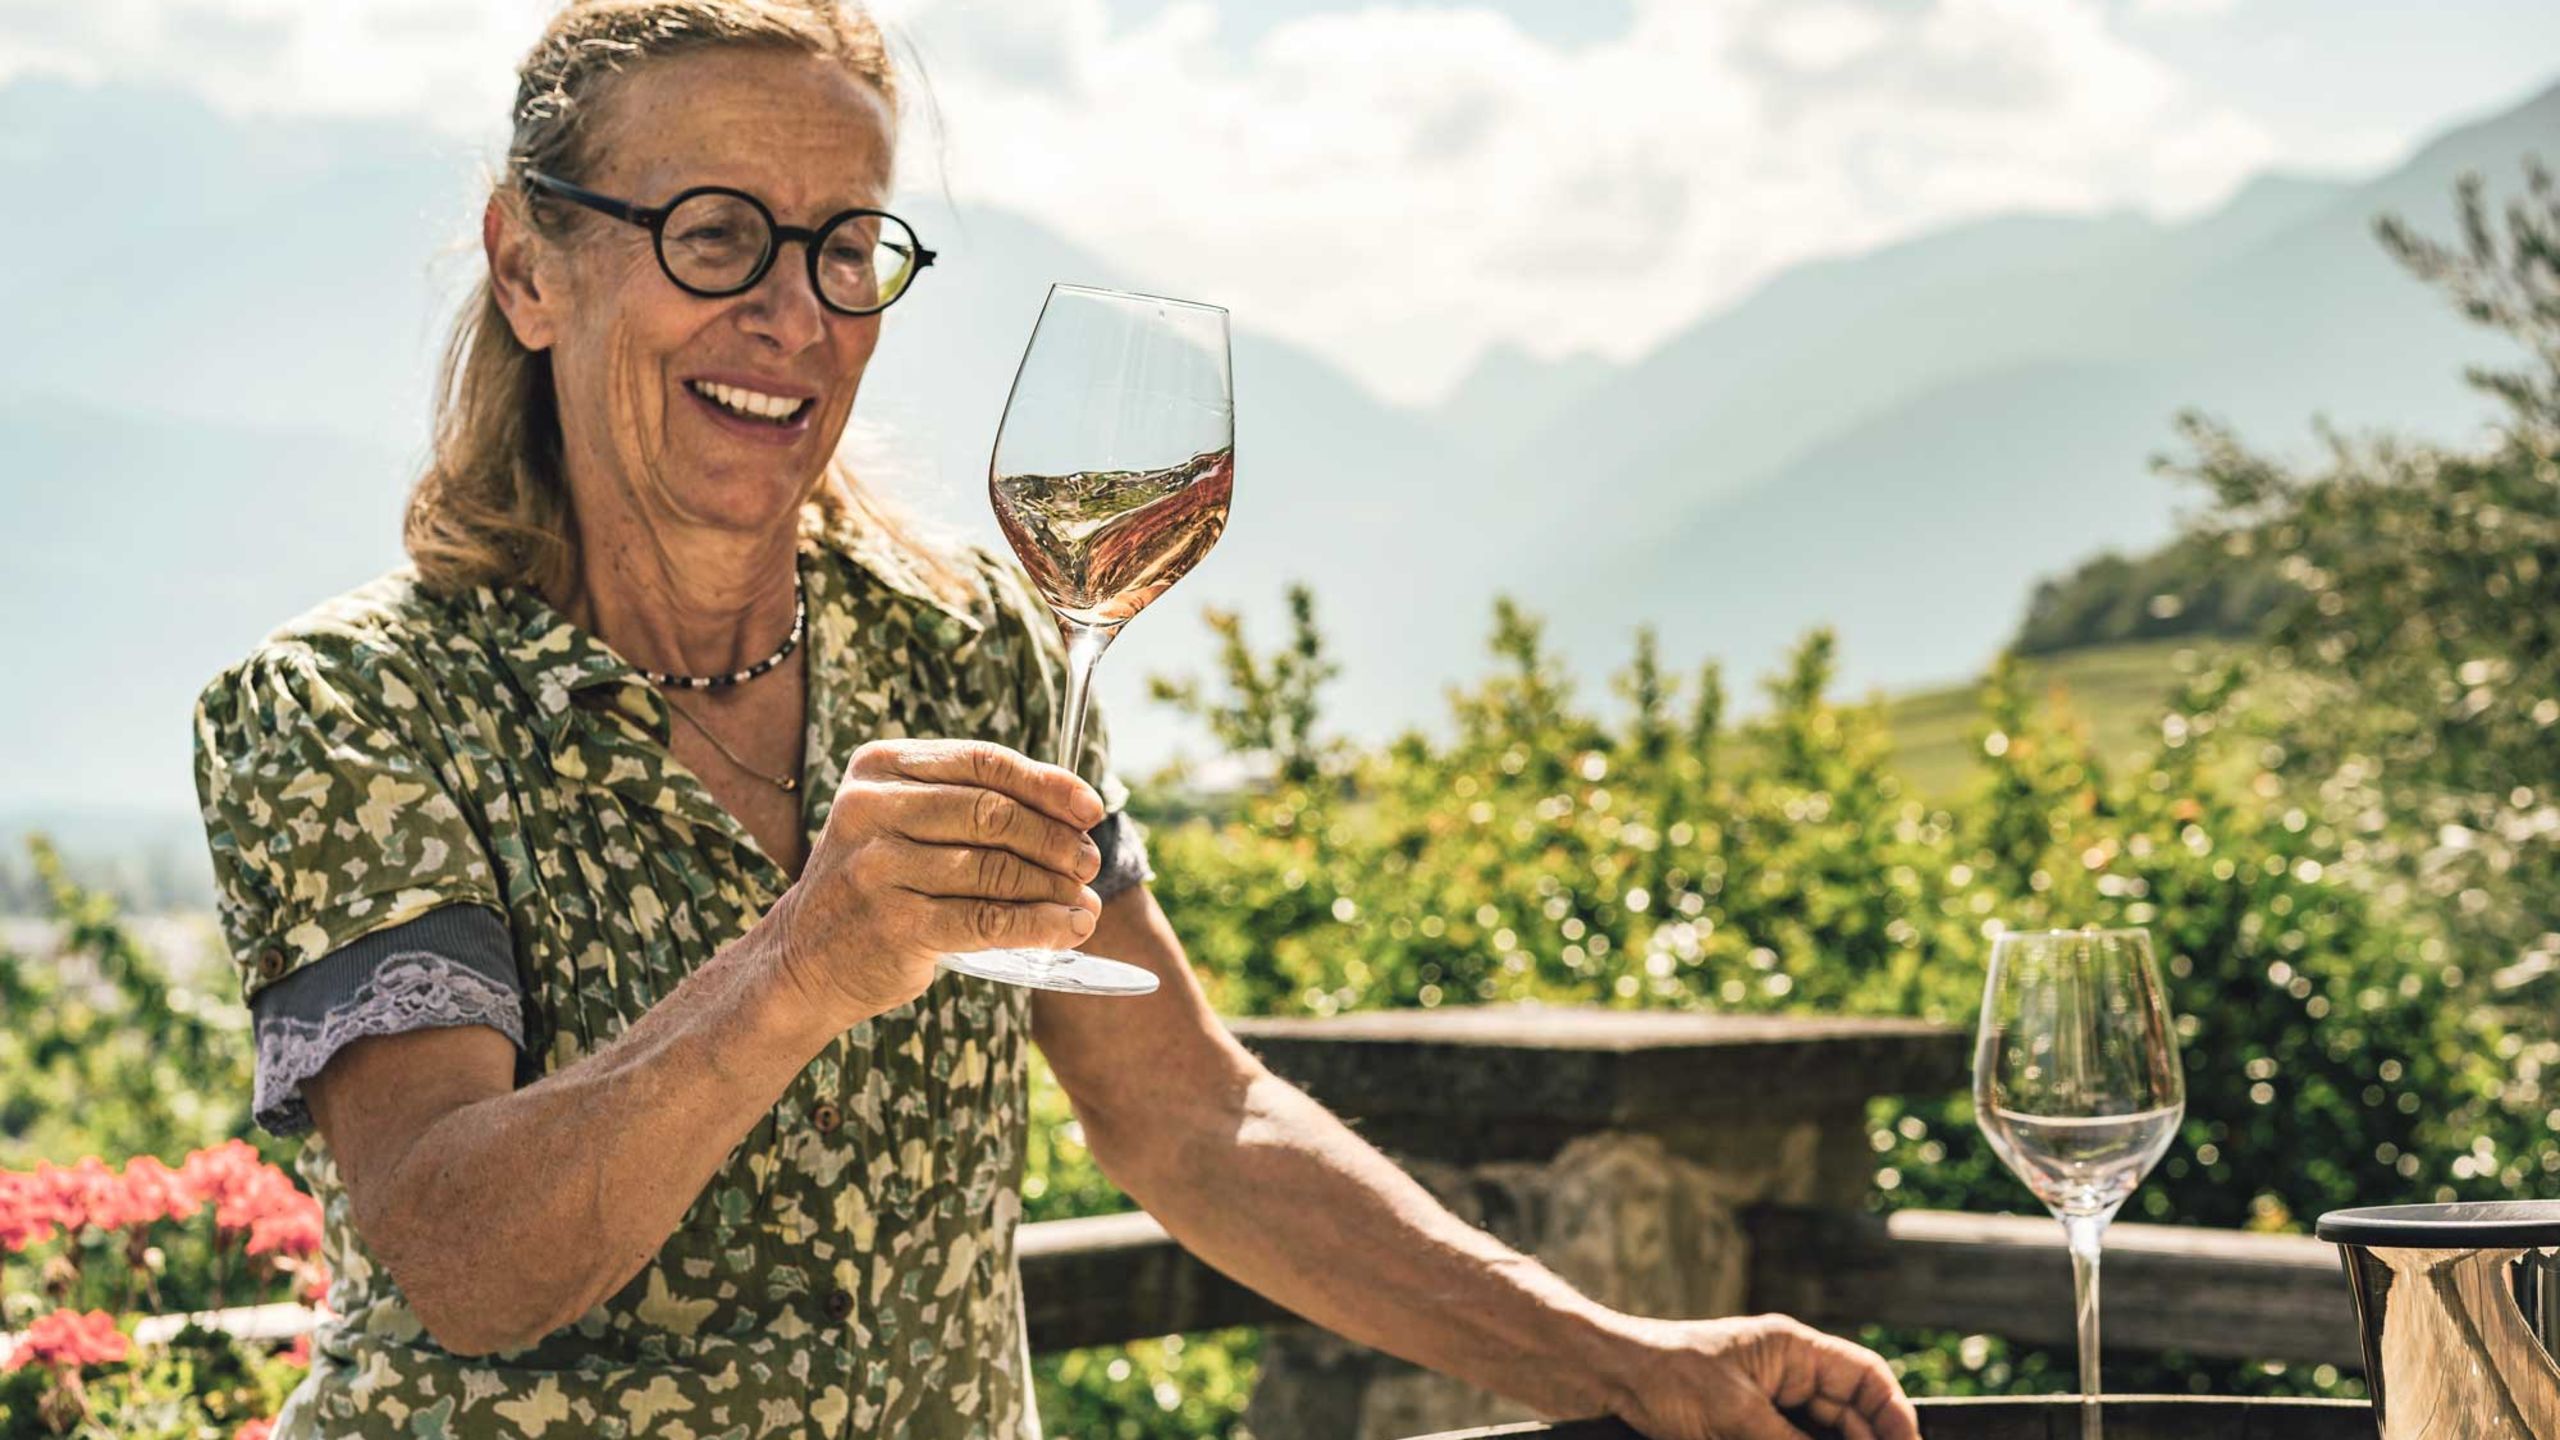 Marie Thérèse Chappaz in her vineyard in Fully, Valais, Switzerland